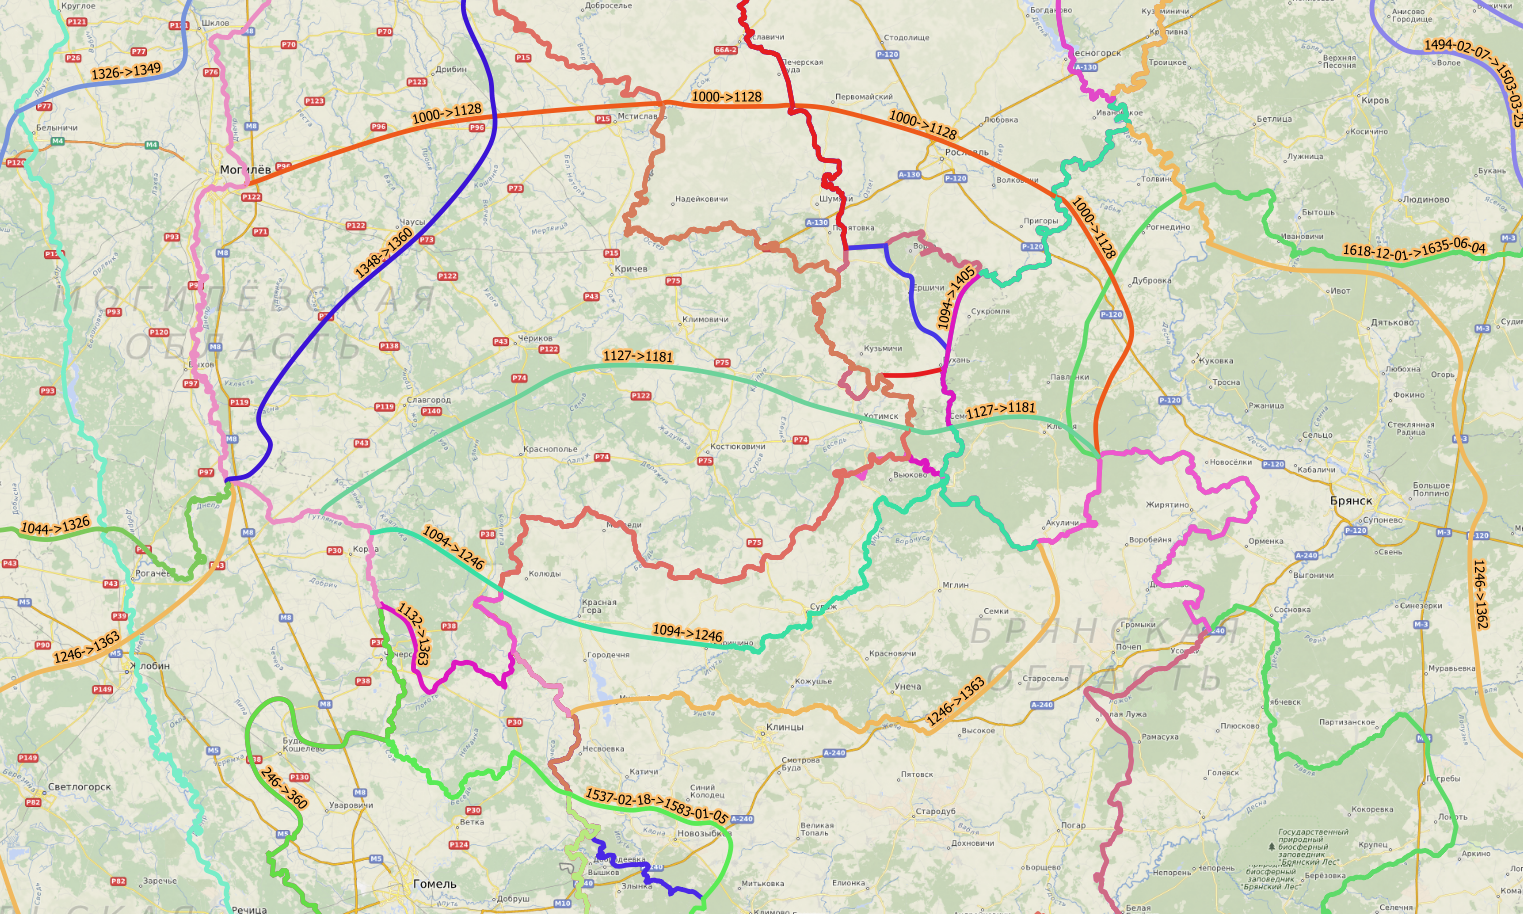 Пример изменения границ на территории современной Брянской (Россия) и Могилевской областей (Беларусь).